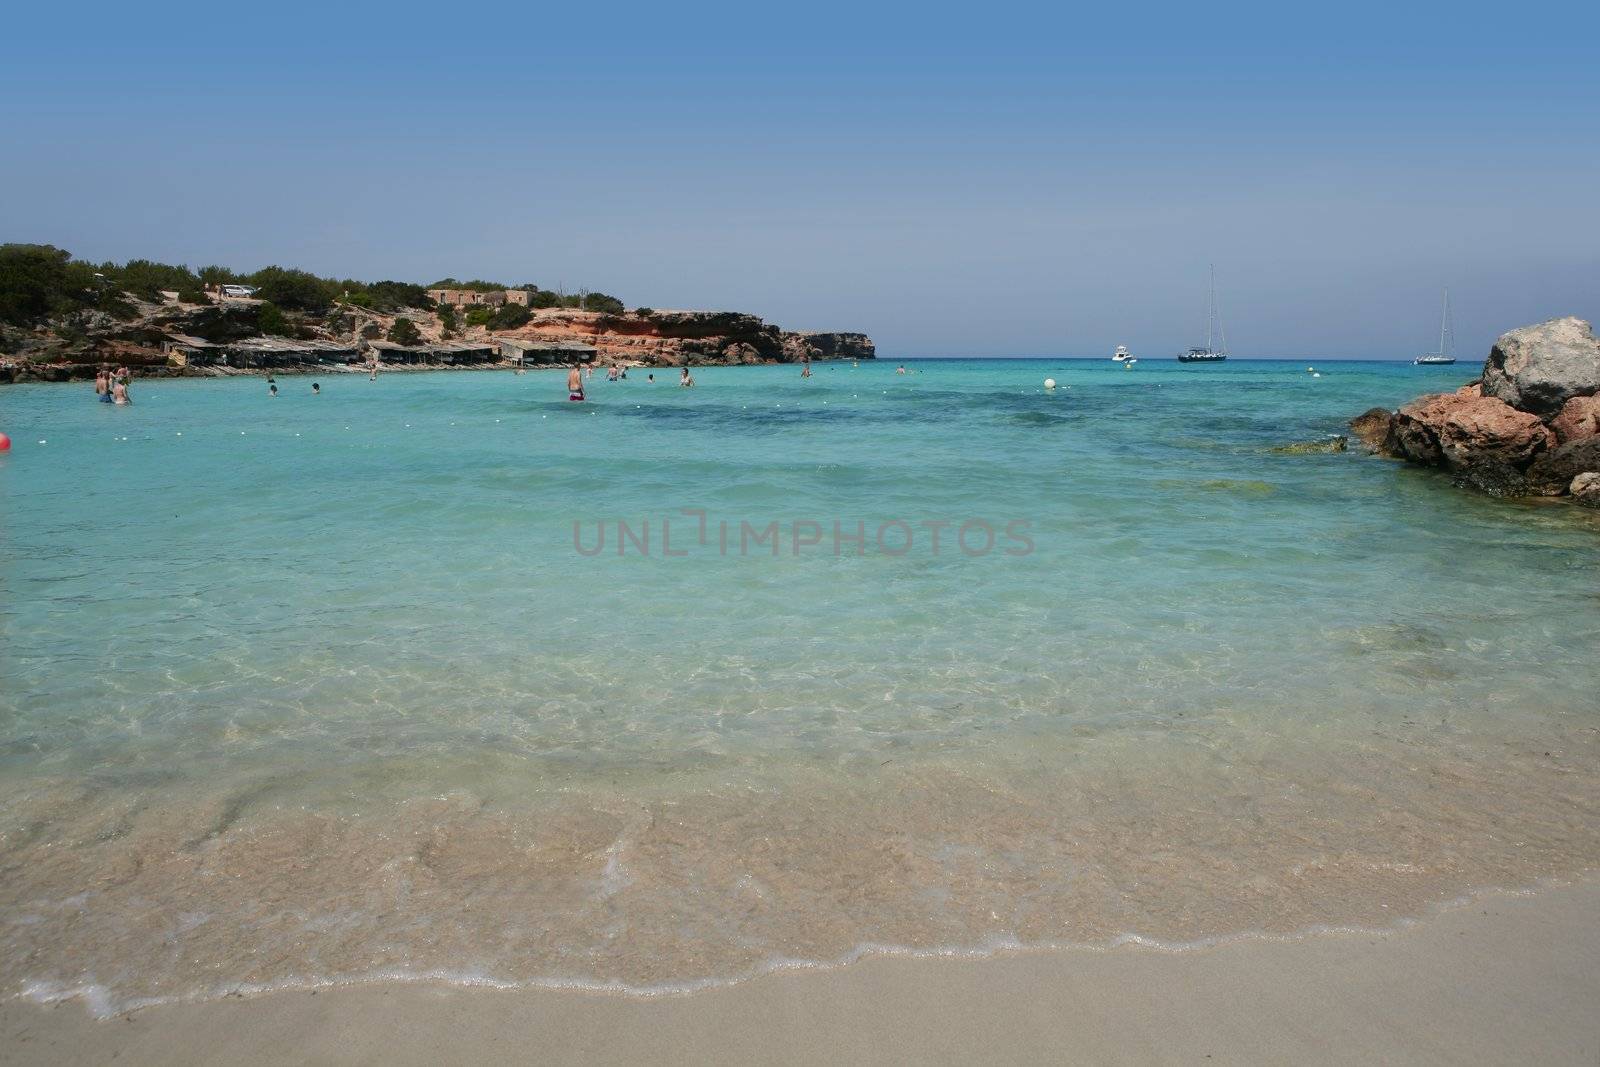 Formentera balearic island Cala Saona Beach by lunamarina